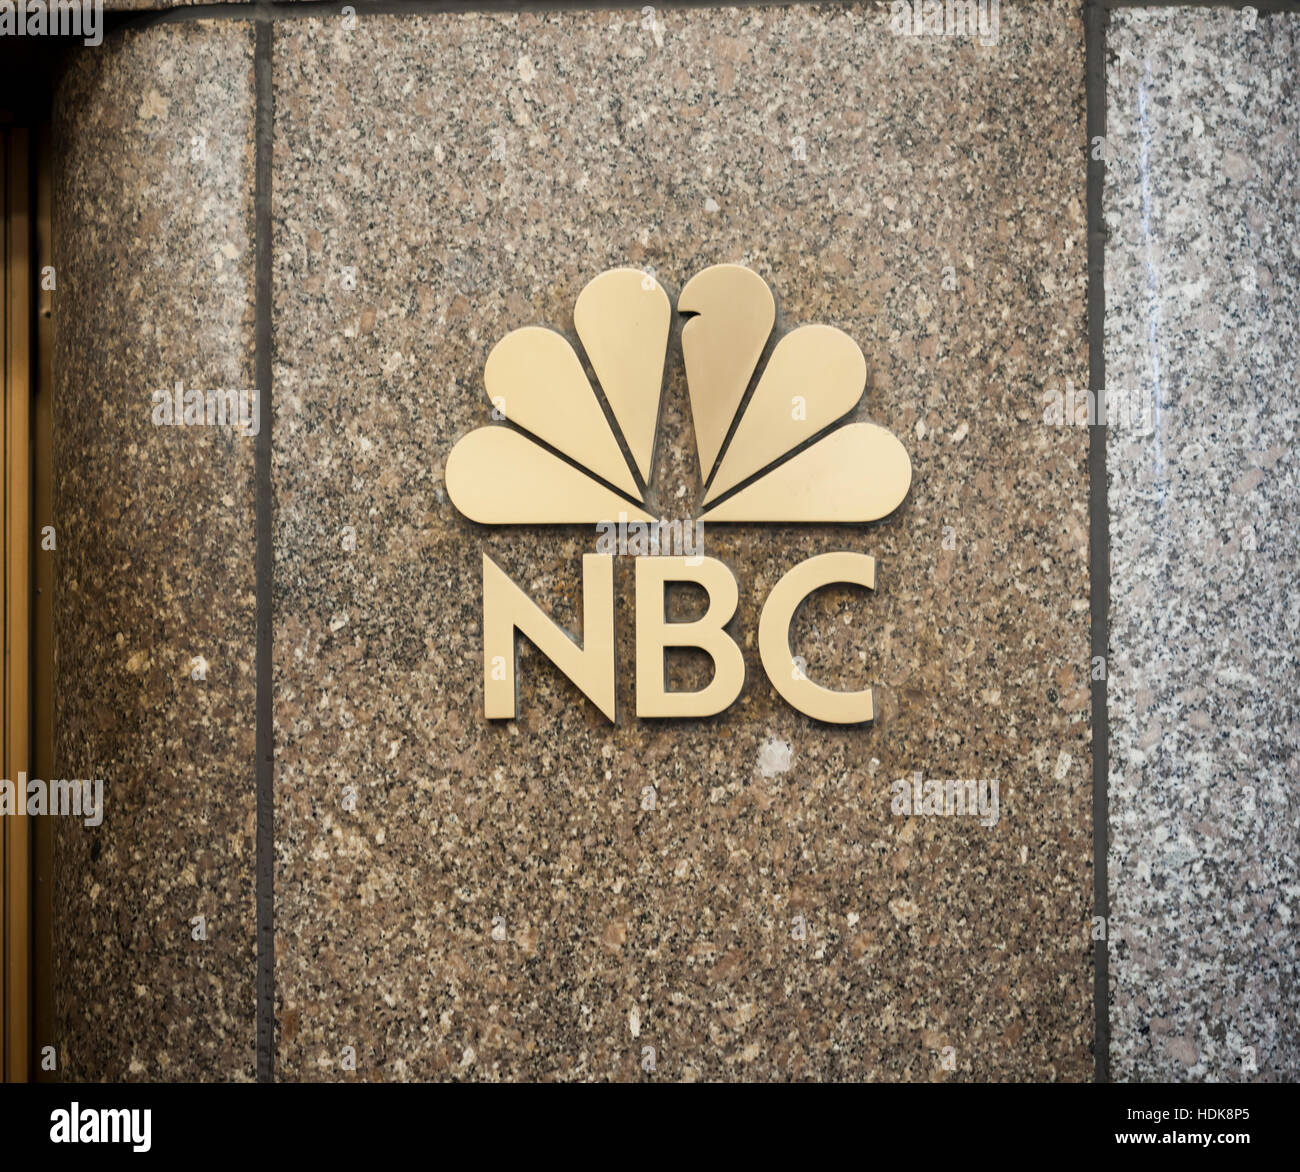 Logo de la CCBN est vu dans le Rockefeller Center de New York le vendredi 9 décembre 2016. Le président élu, Donald Trump devrait rester comme producteur exécutif de "l'Apprenti", indiquée sur NBC, même après qu'il entre en fonction. La dernière incarnation de l'émission, "Celebrity Apprentice", est diffusé le 2 janvier 2017 après un hiatus de deux ans et dispose d'Arnold Schwarzenegger dans le rôle d'Atout. (© Richard B. Levine) Banque D'Images